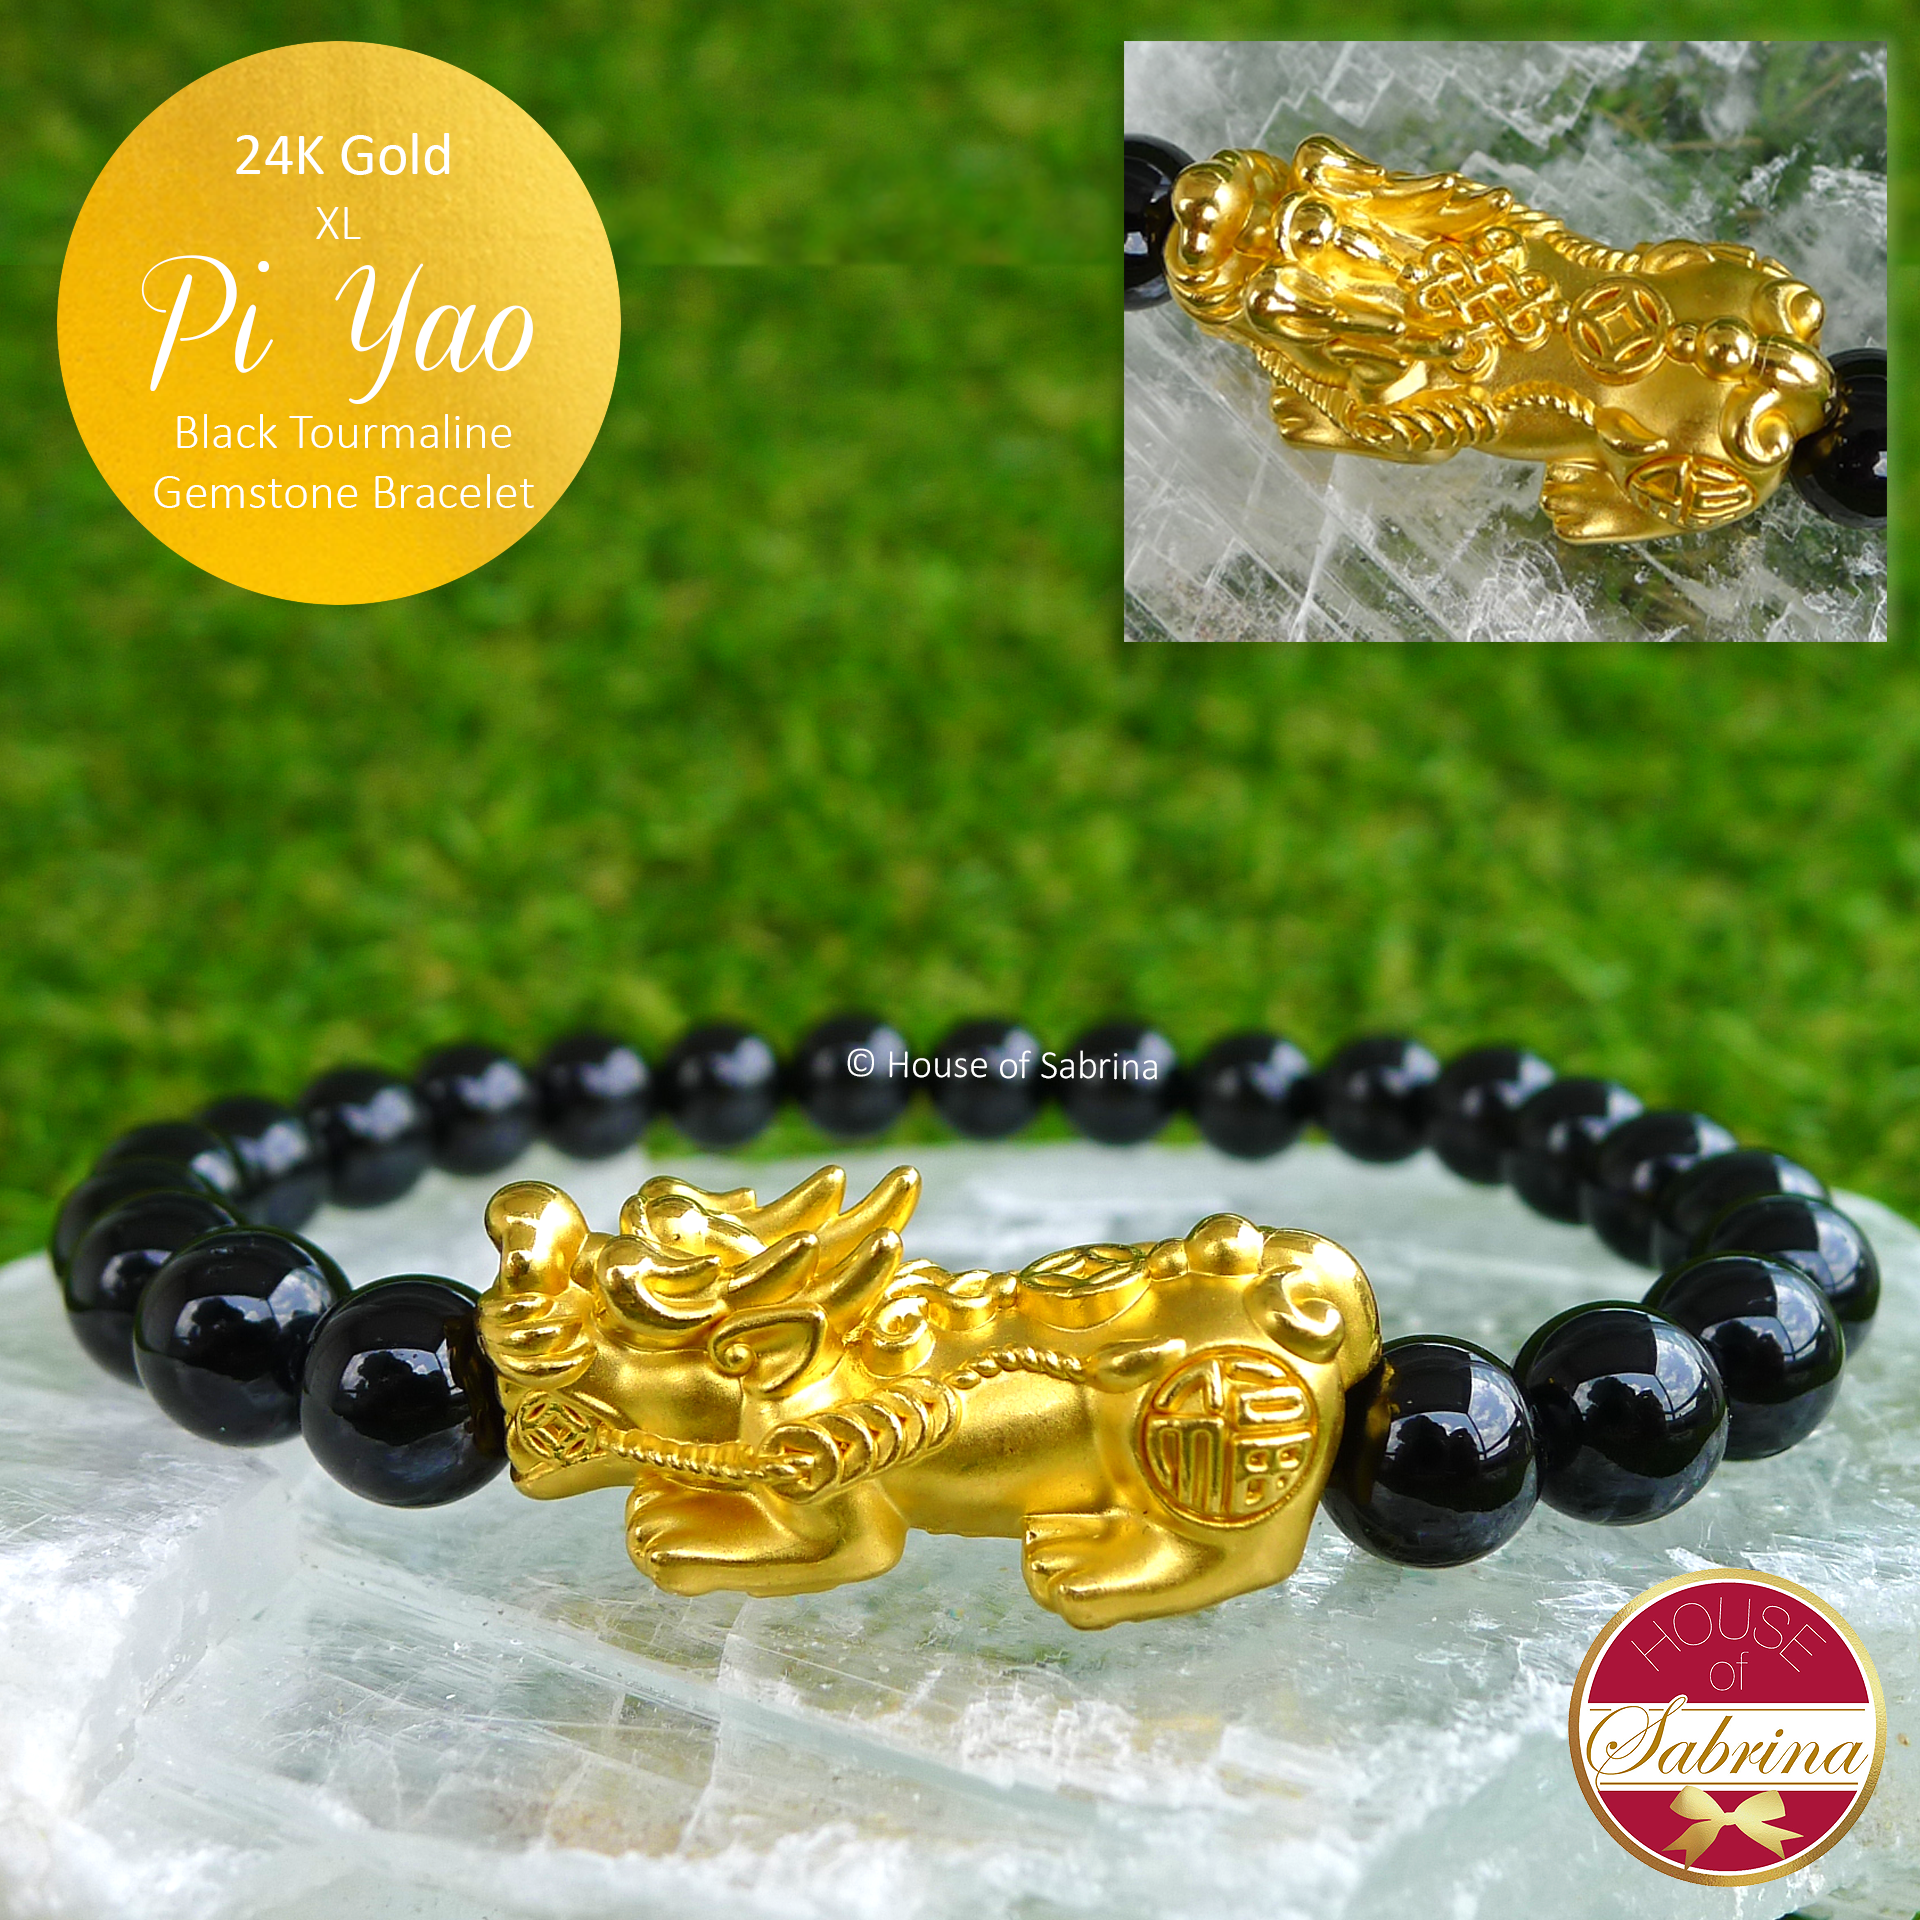 24K Gold XL Pi Yao on Black Tourmaline Bracelet